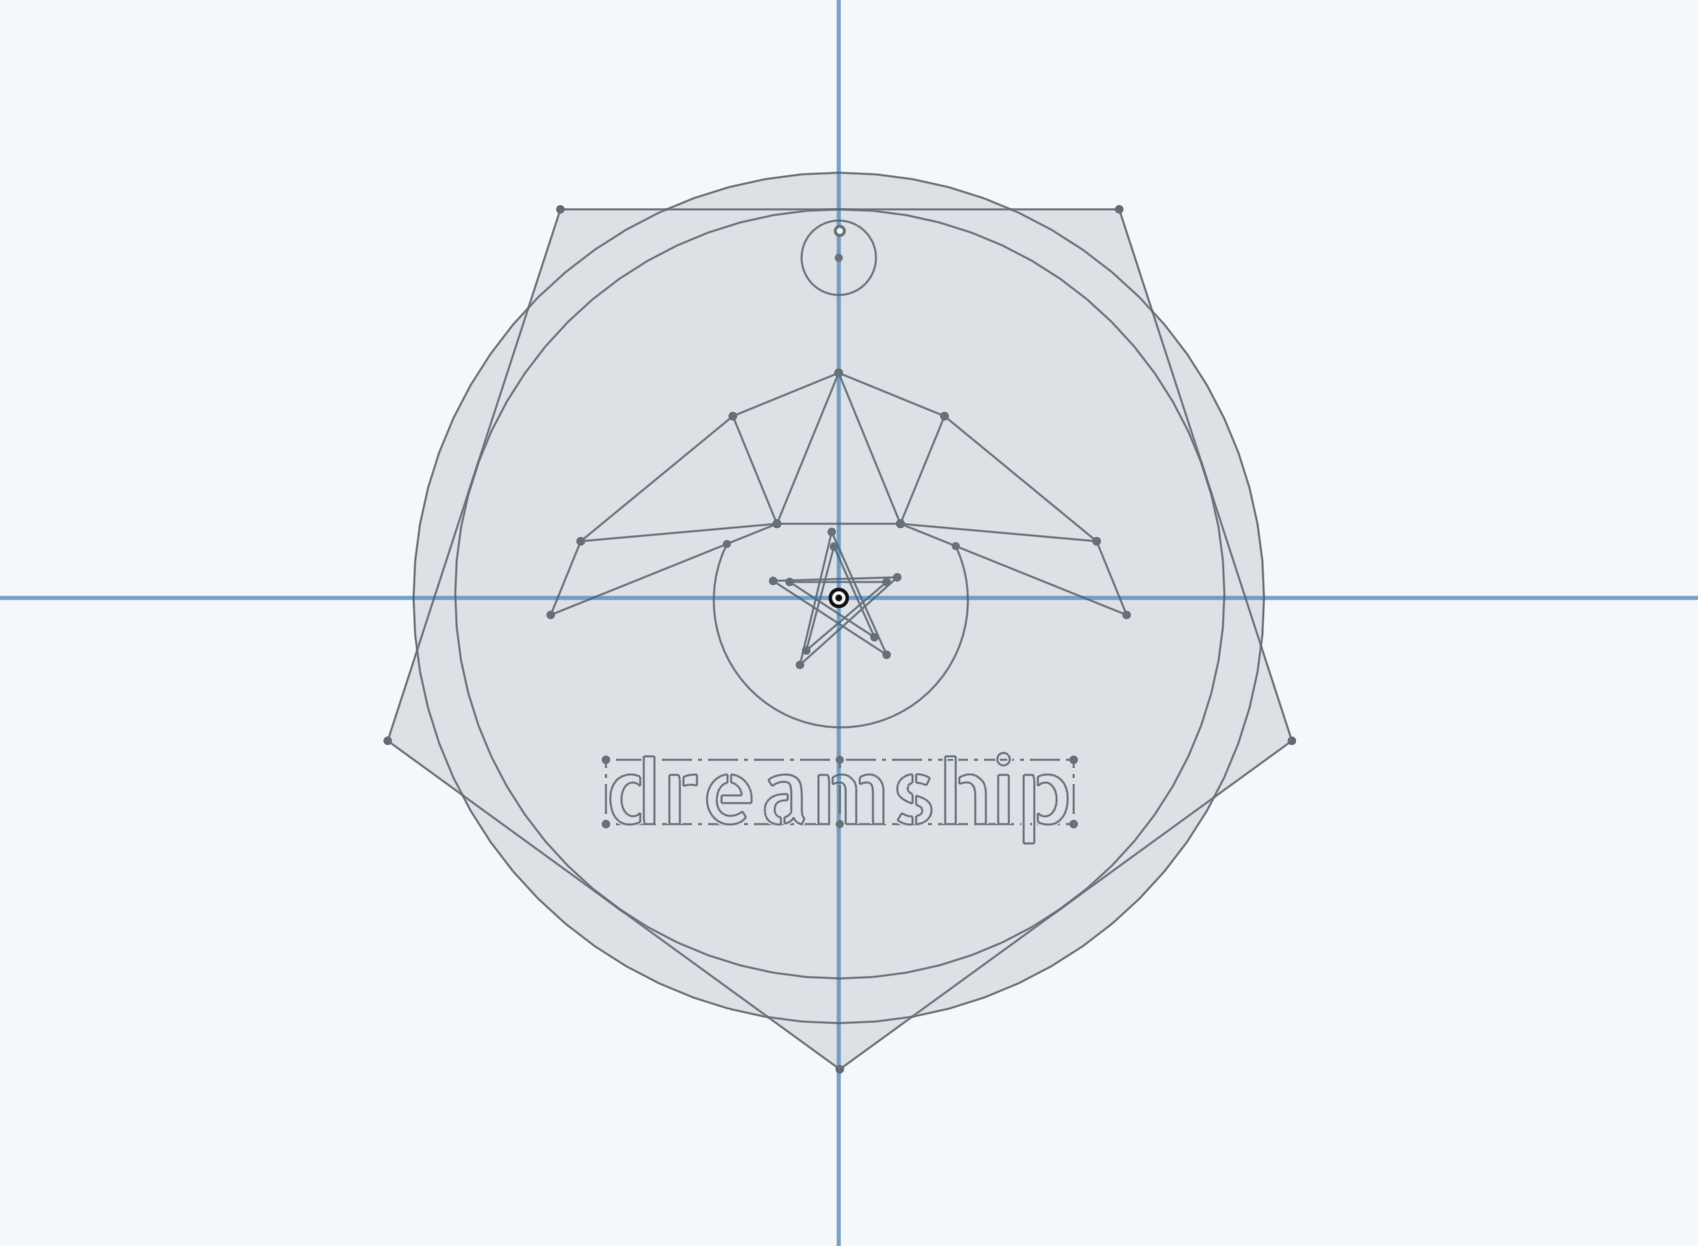 dreamship logo